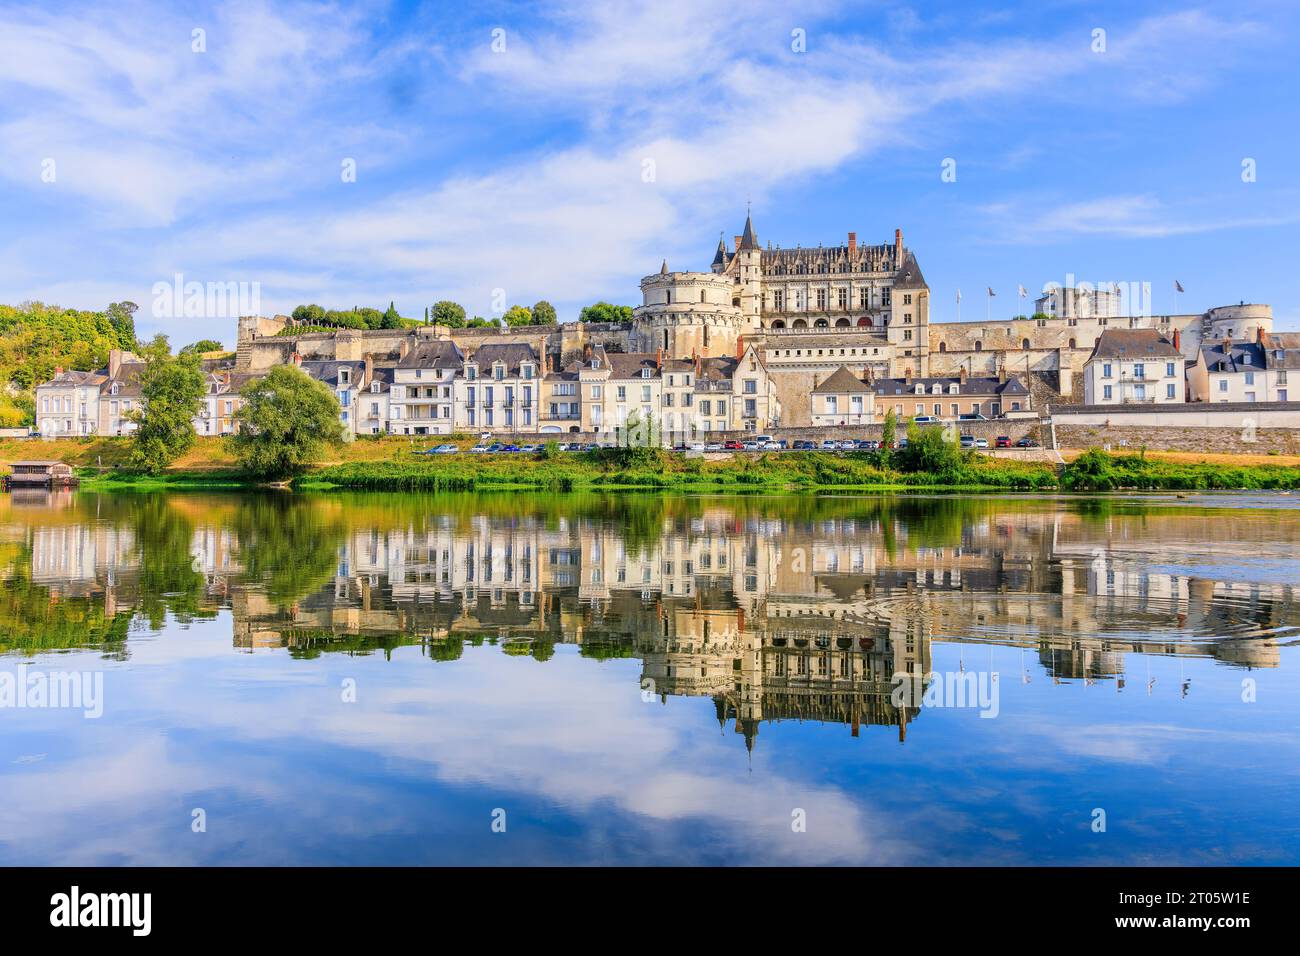 Amboise, France. La ville fortifiée et le château d'Amboise se reflètent dans la Loire. Banque D'Images